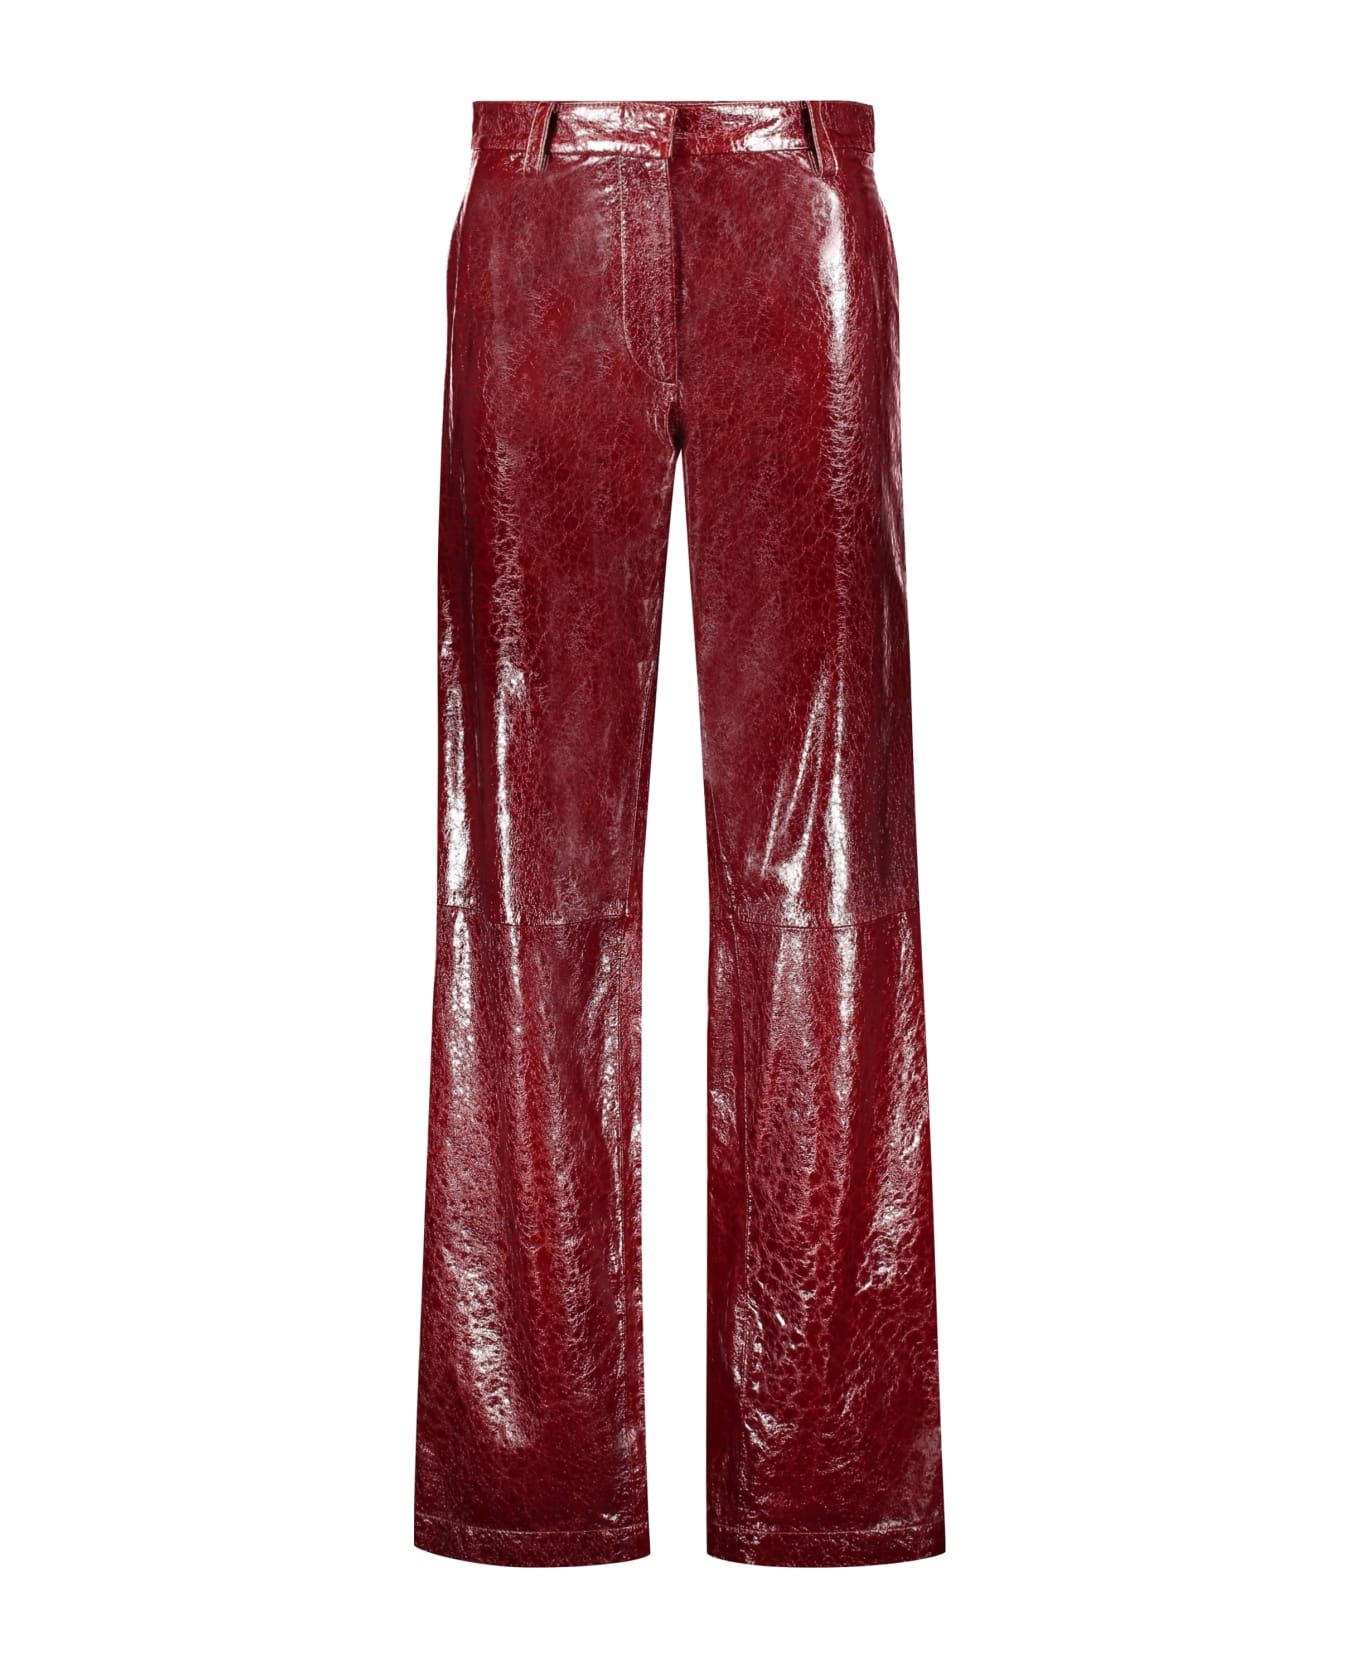 Missoni Leather Pants - Burgundy